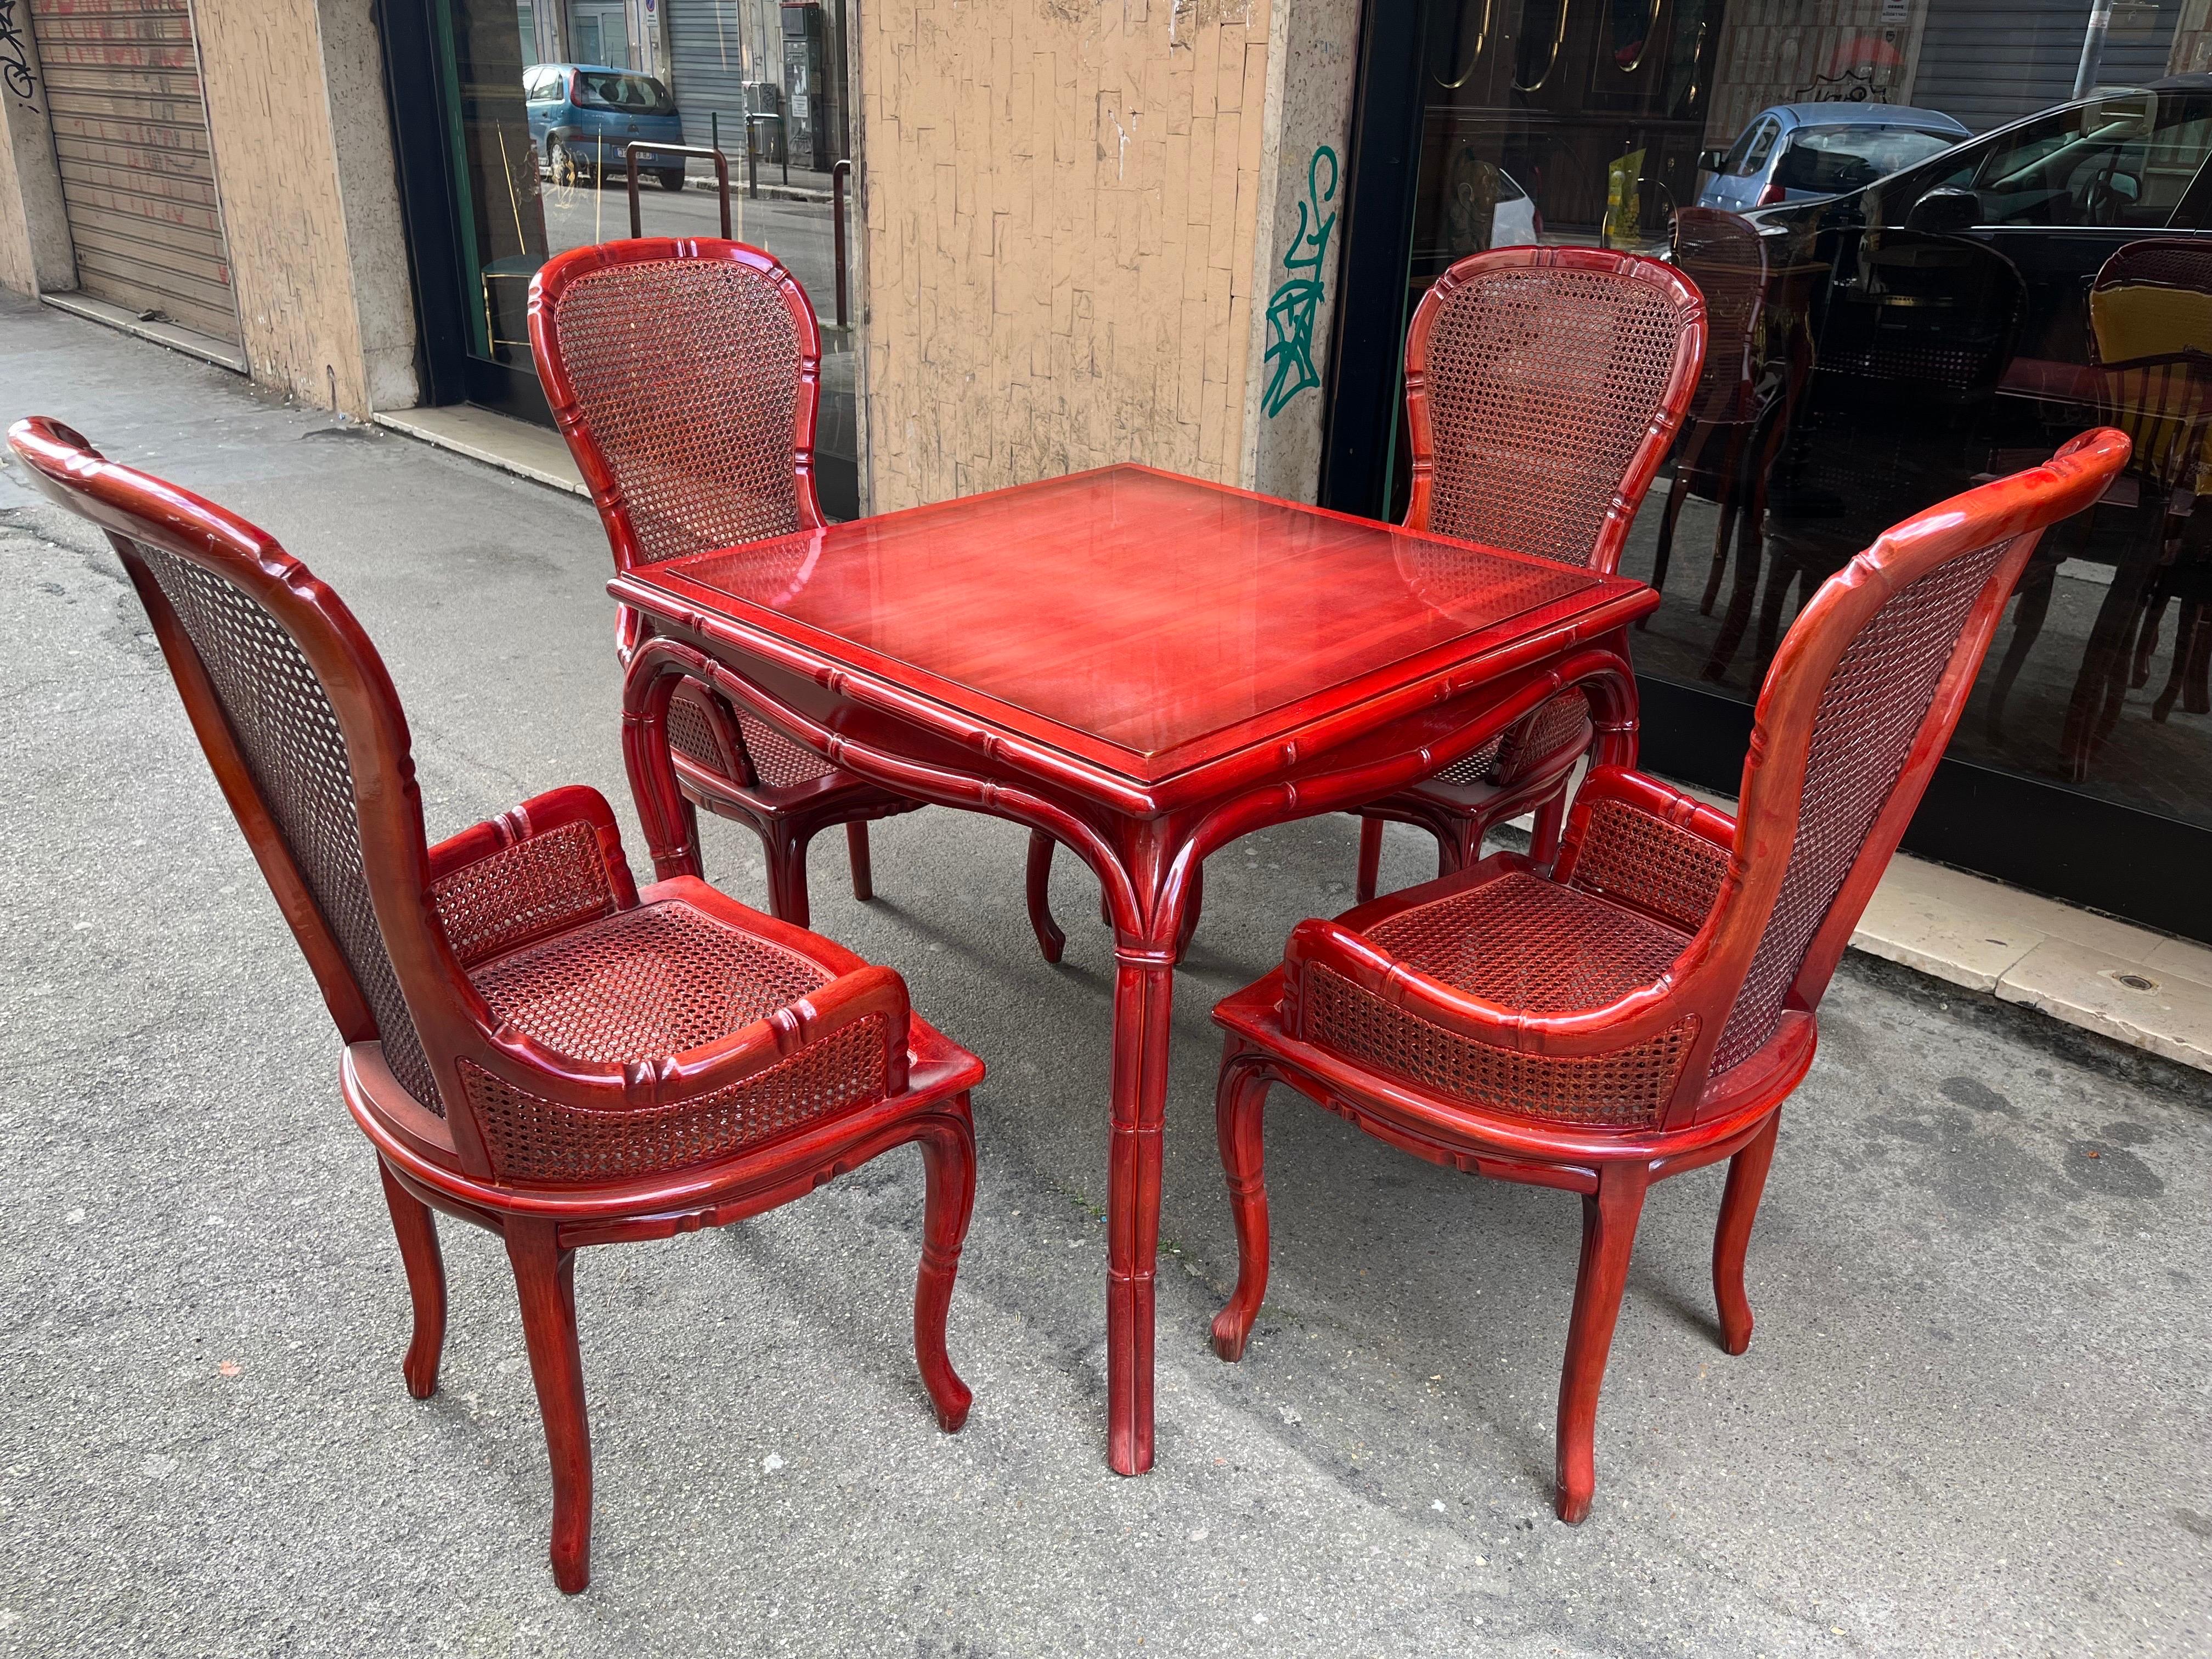 Roter Holzspieltisch mit 4 Sesseln 

1970er Jahre Original Vintage Artikel

Top-Design 

Tisch cm 83 x cm 83 x cm 75 

Sessel 